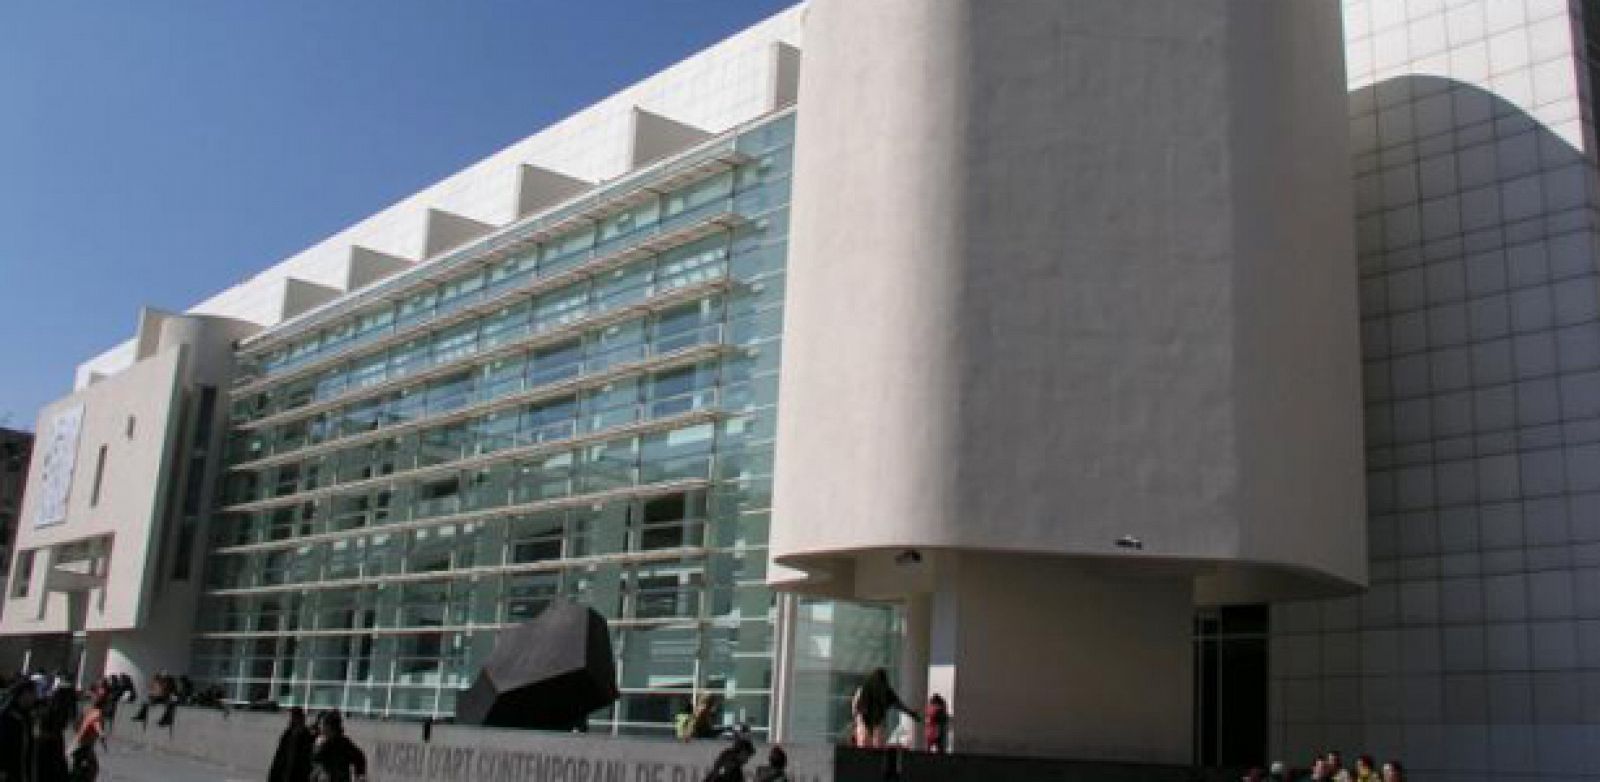 El Museo MACBA ha firmado un acuerdo con la Fundación "La Caixa" para aunar sus colecciones